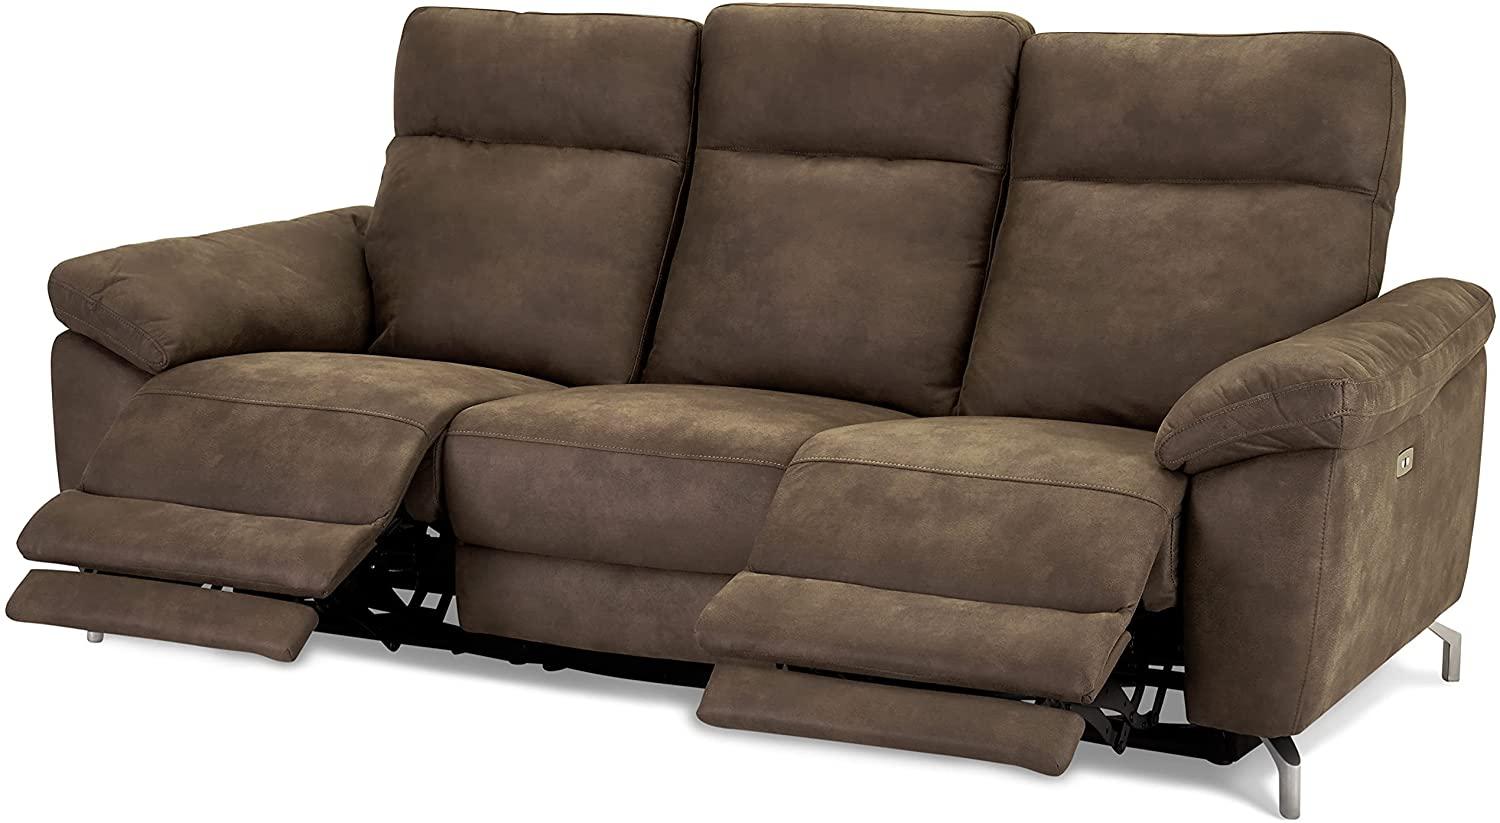 Ibbe Design Braun Stoff 3er Sitzer Relaxsofa Couch mit Elektrisch Verstellbar Relaxfunktion Heimkino Sofa Doha mit Fussteil, Federkern, 222x96x101 cm Bild 1